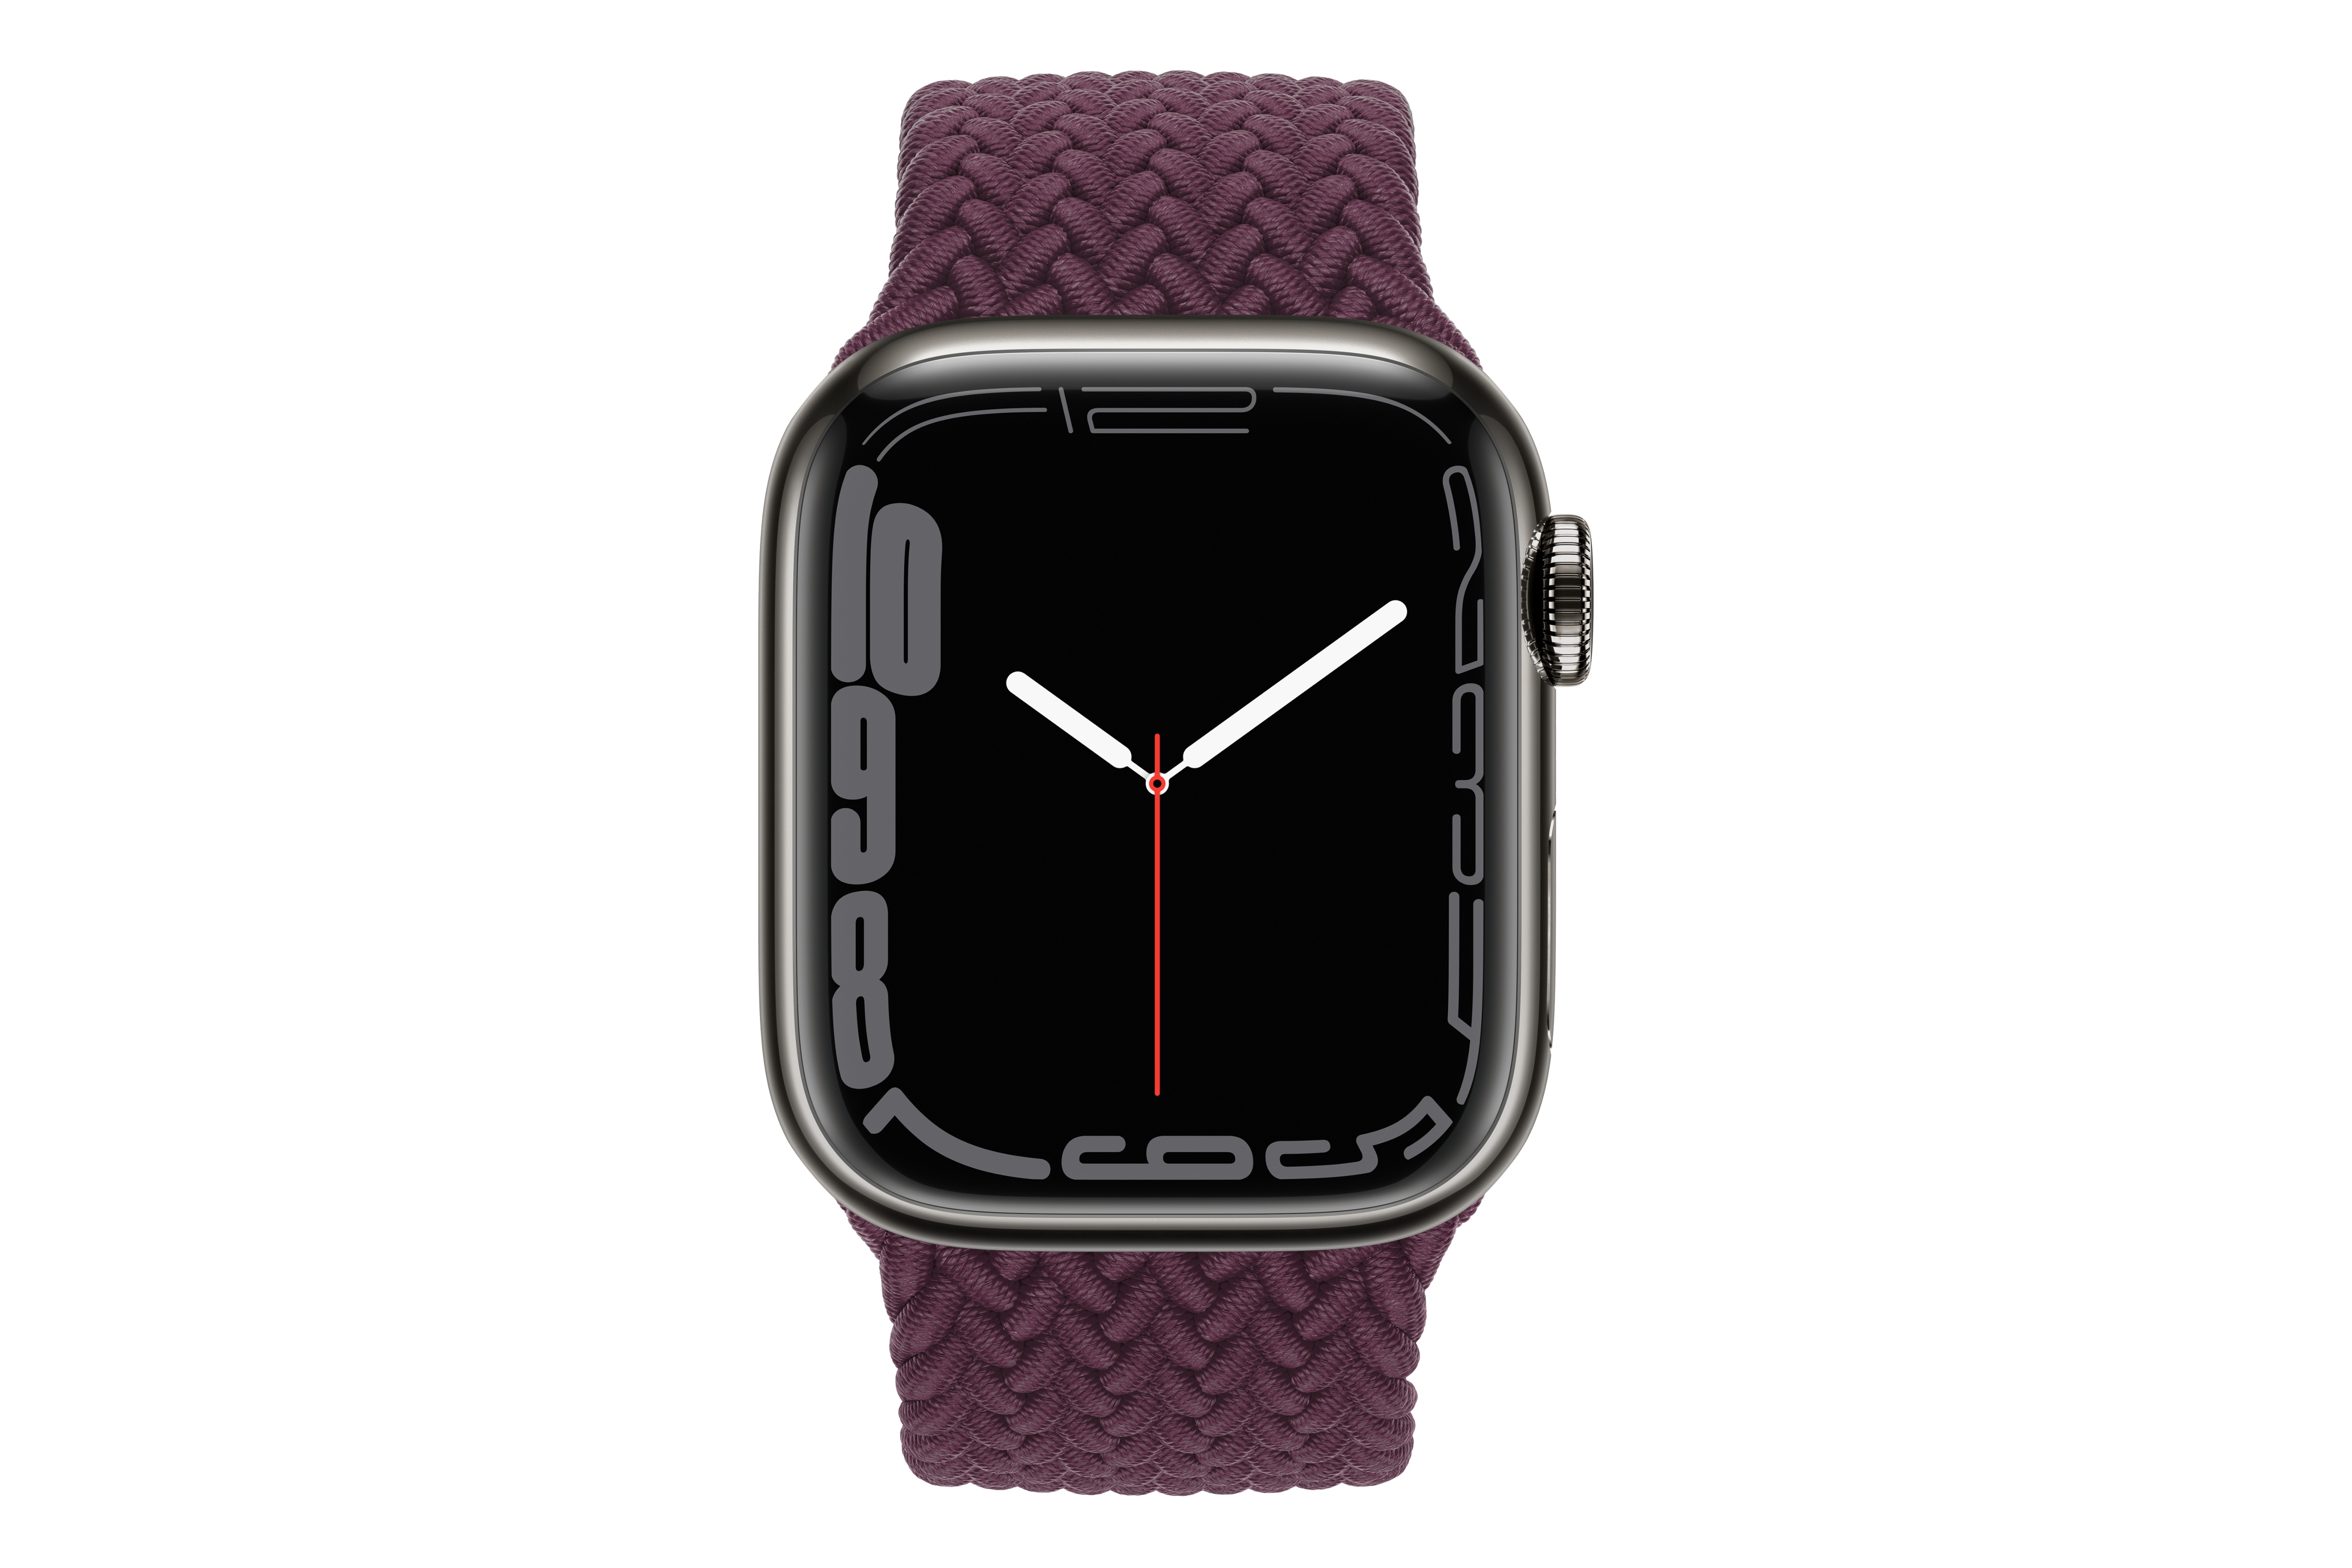 نمای روبرو اپل واچ سری 7 استیل / Apple Watch Series 7 Stainless Steel خاکستری